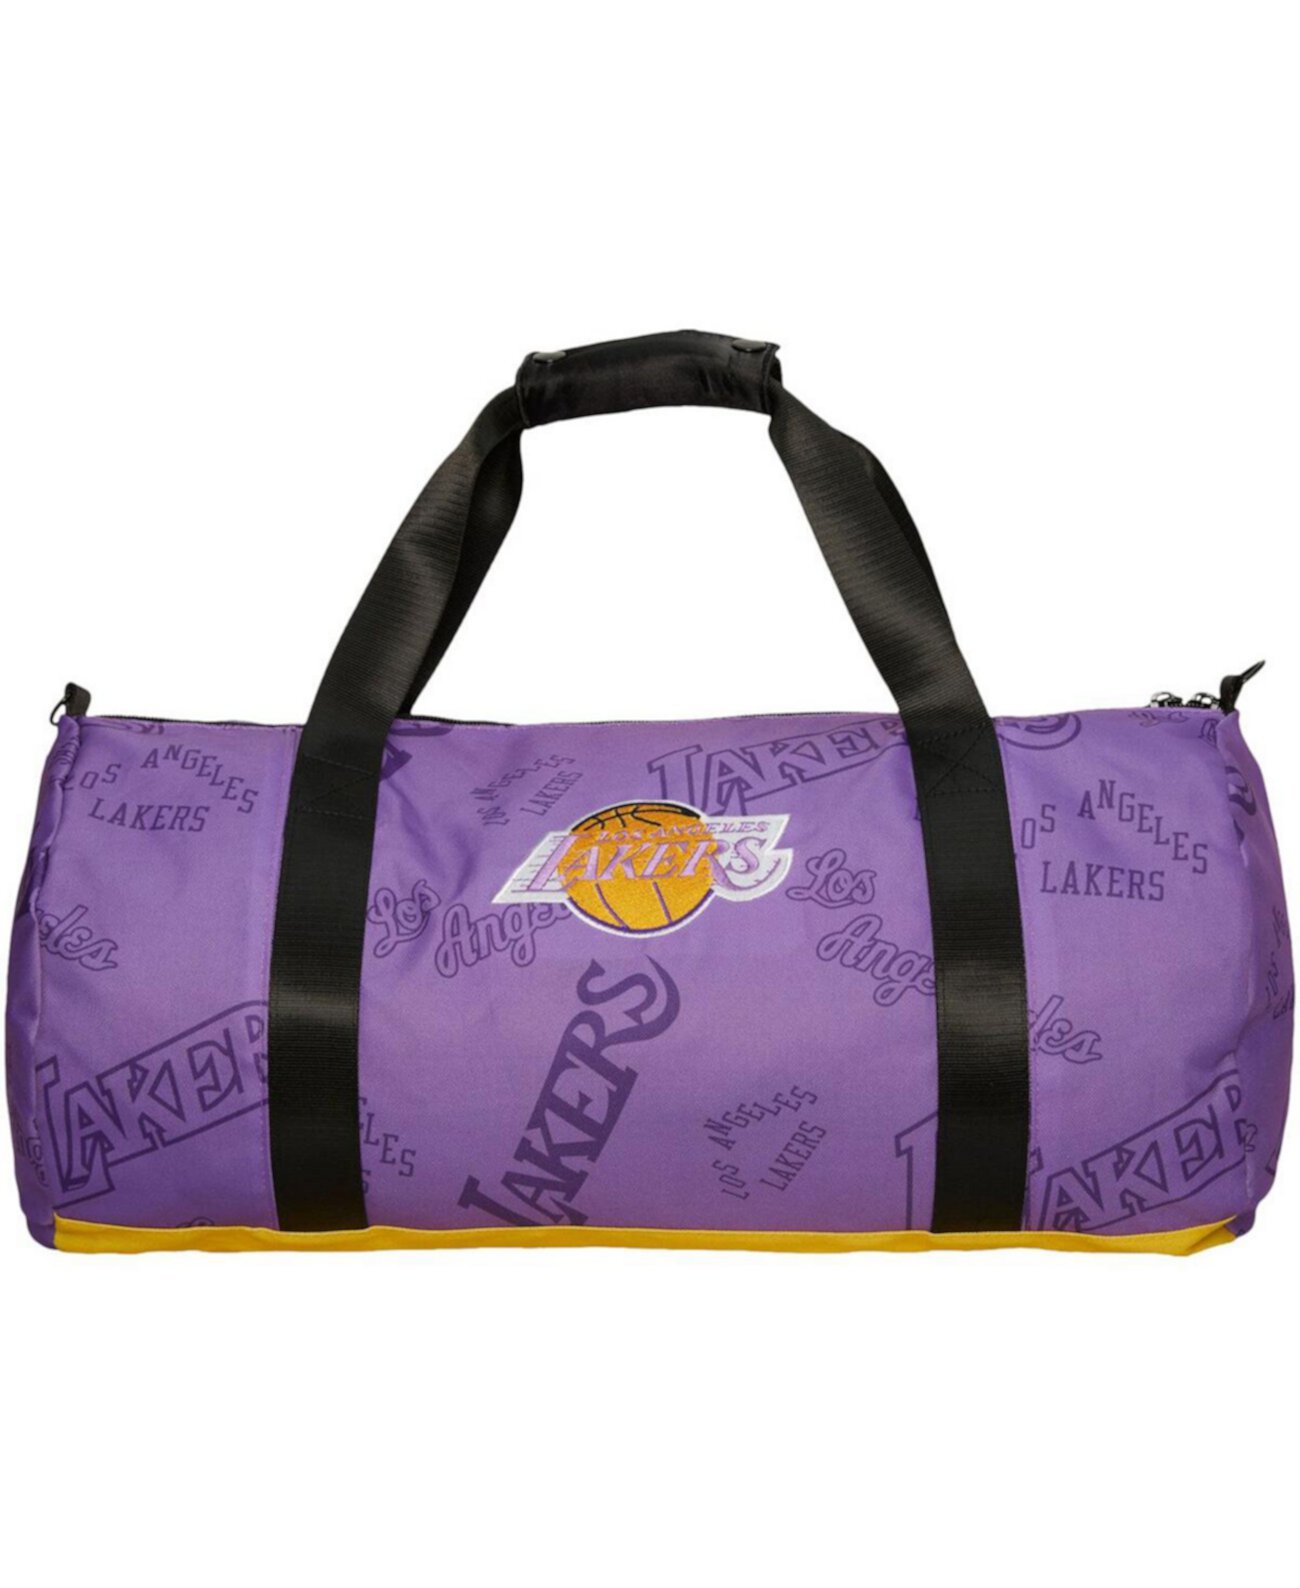 Мужская и женская спортивная сумка с логотипом команды Los Angeles Lakers Mitchell & Ness